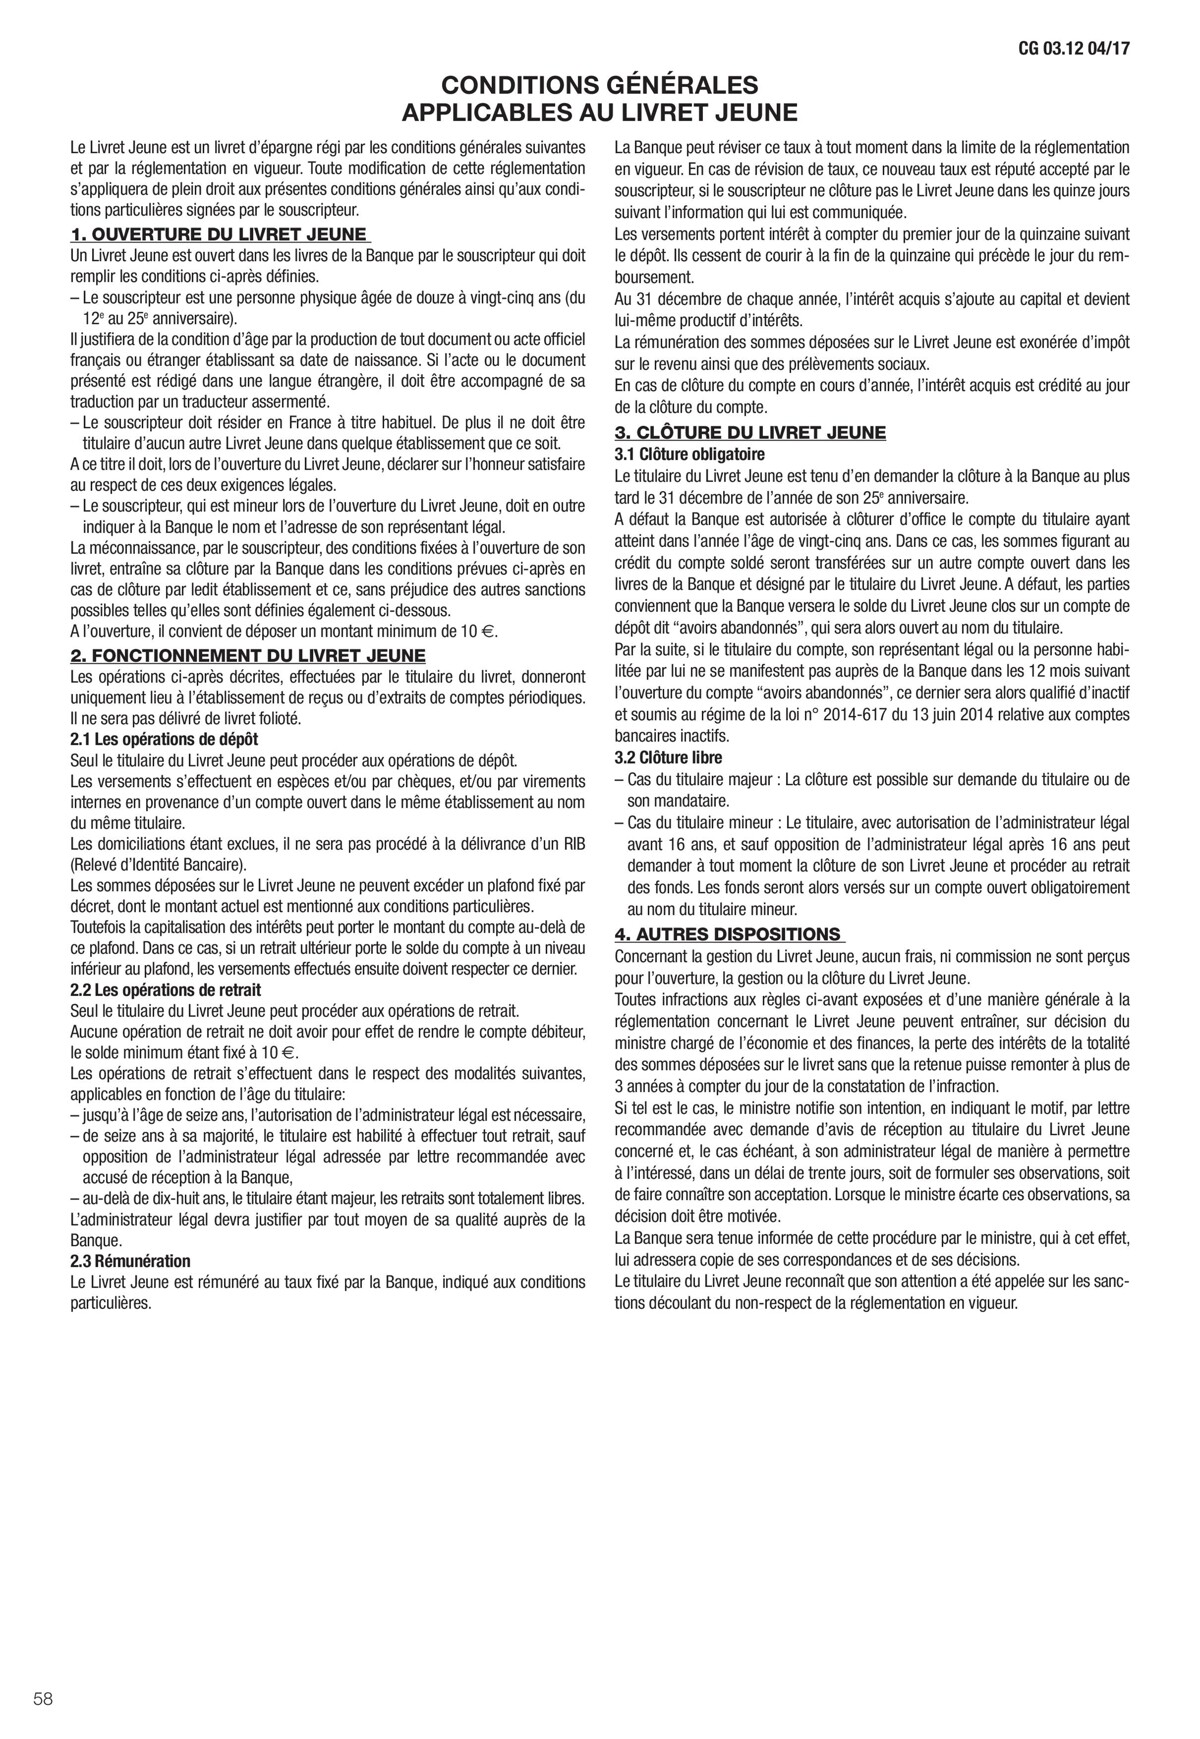 Catalogue Conditions générales Particuliers, page 00060